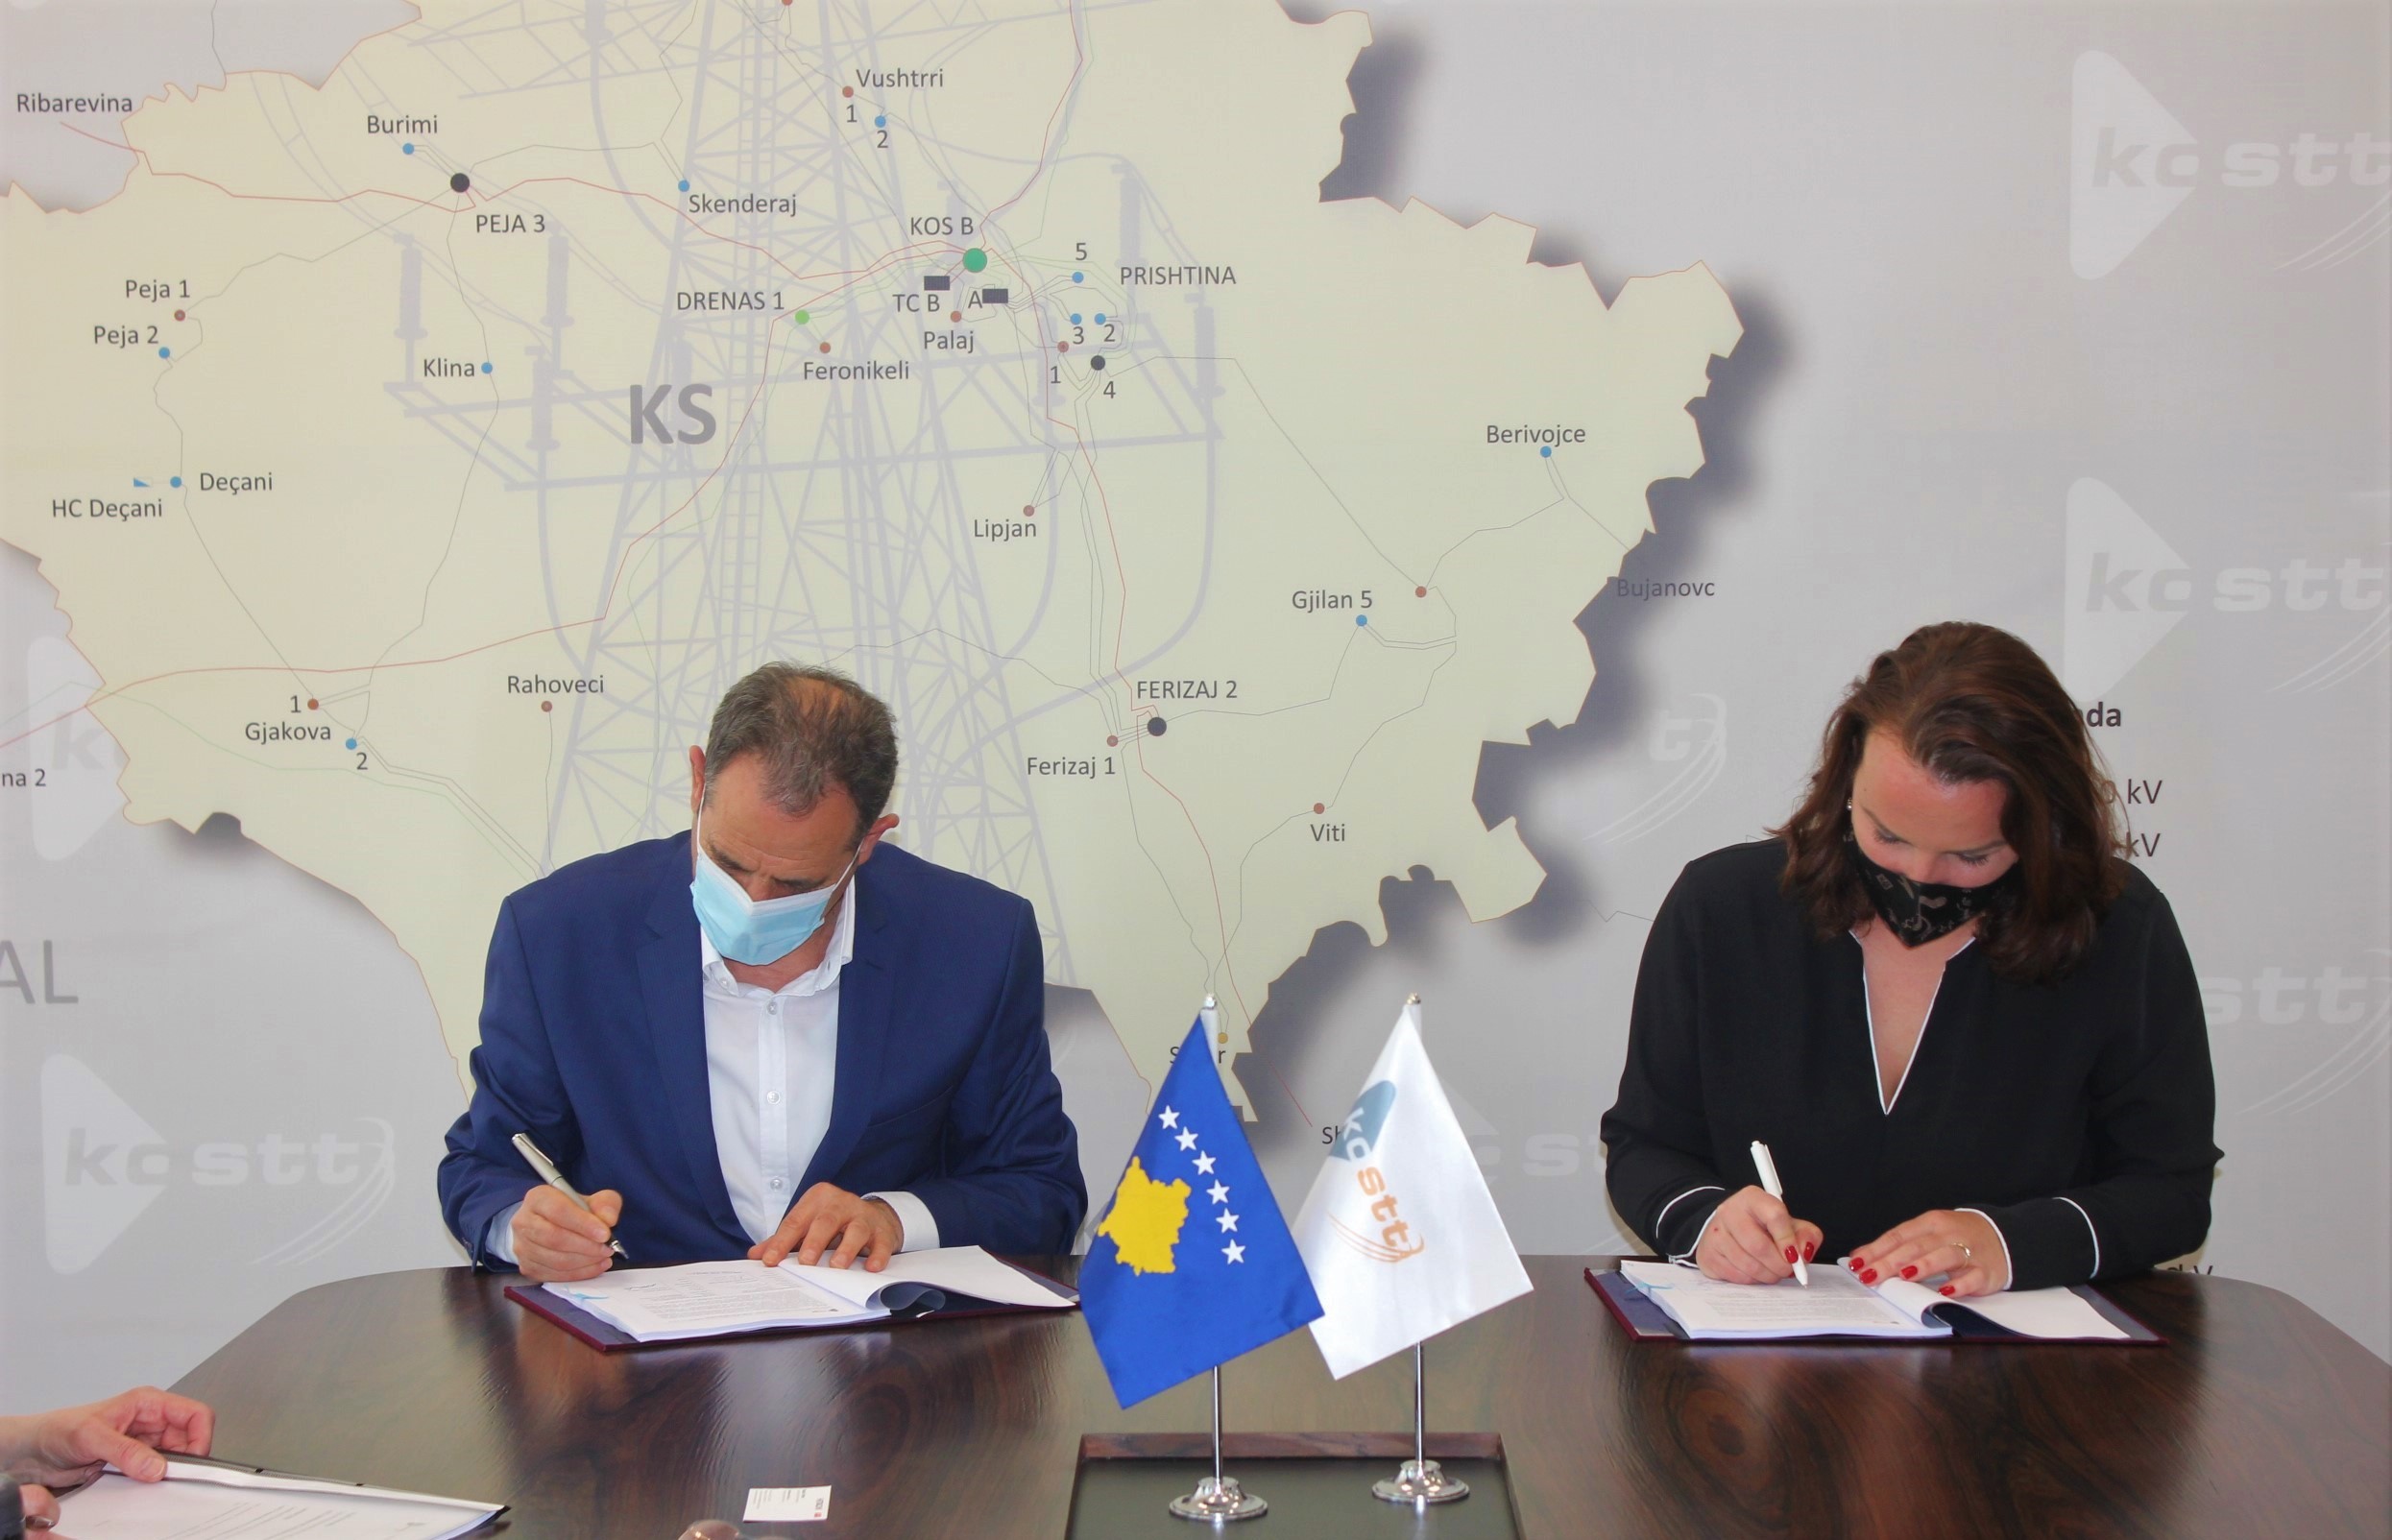 Nënshkruhet kontrata për transmetim të energjisë elektrike në Ferizaj